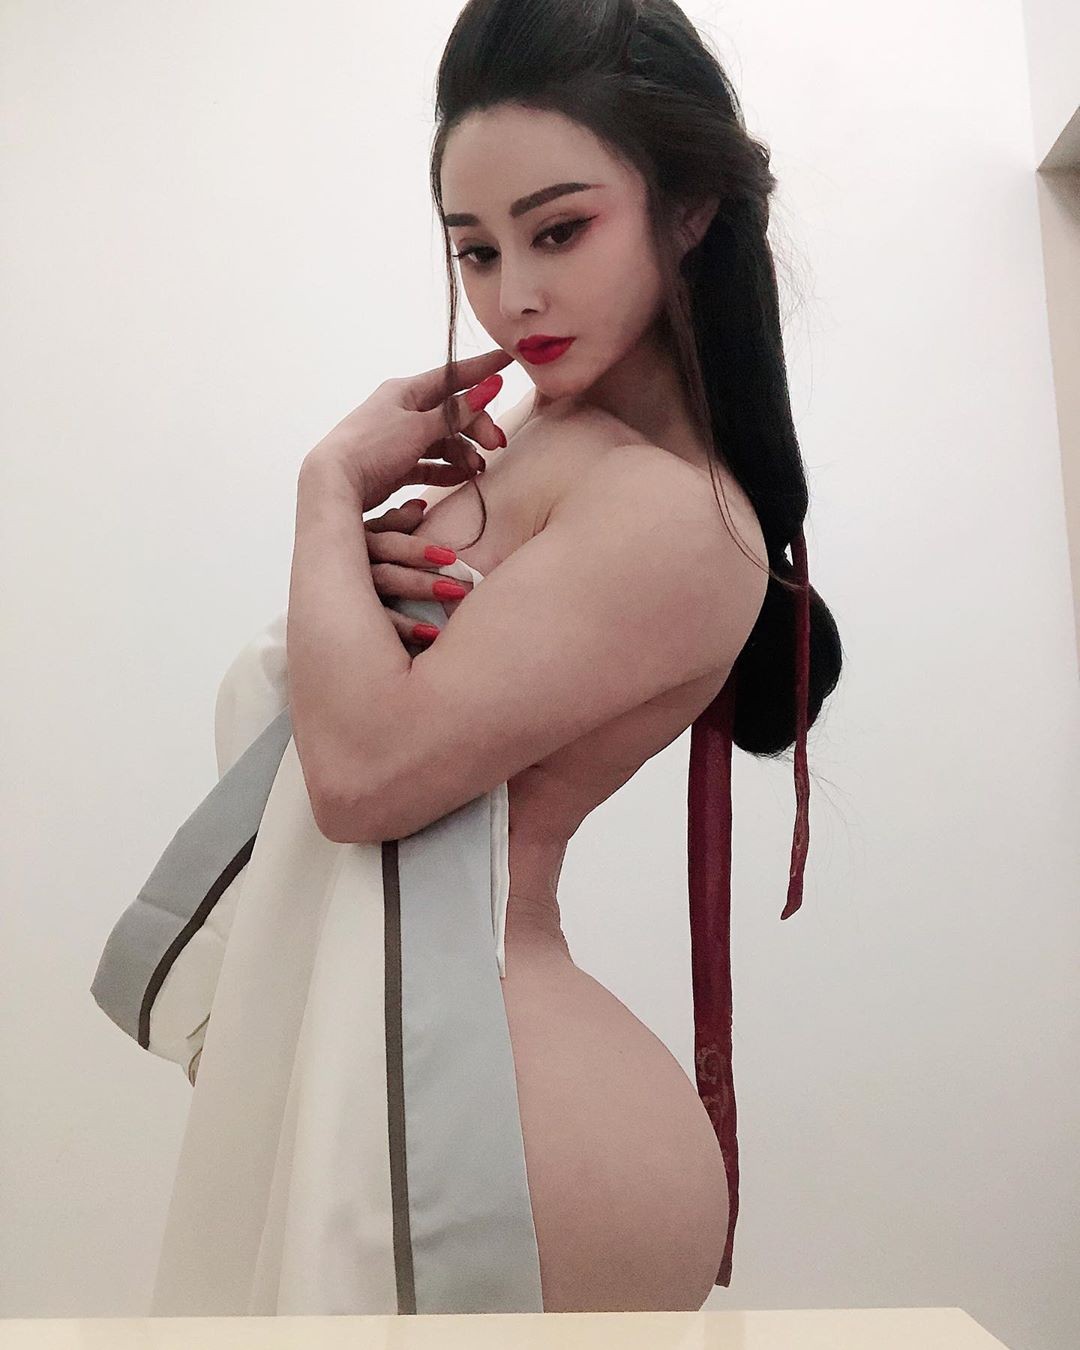 Yuan Herong Nude TheFappening.Pro 113 - Yuan Herong Nude (118 Photos And Videos)